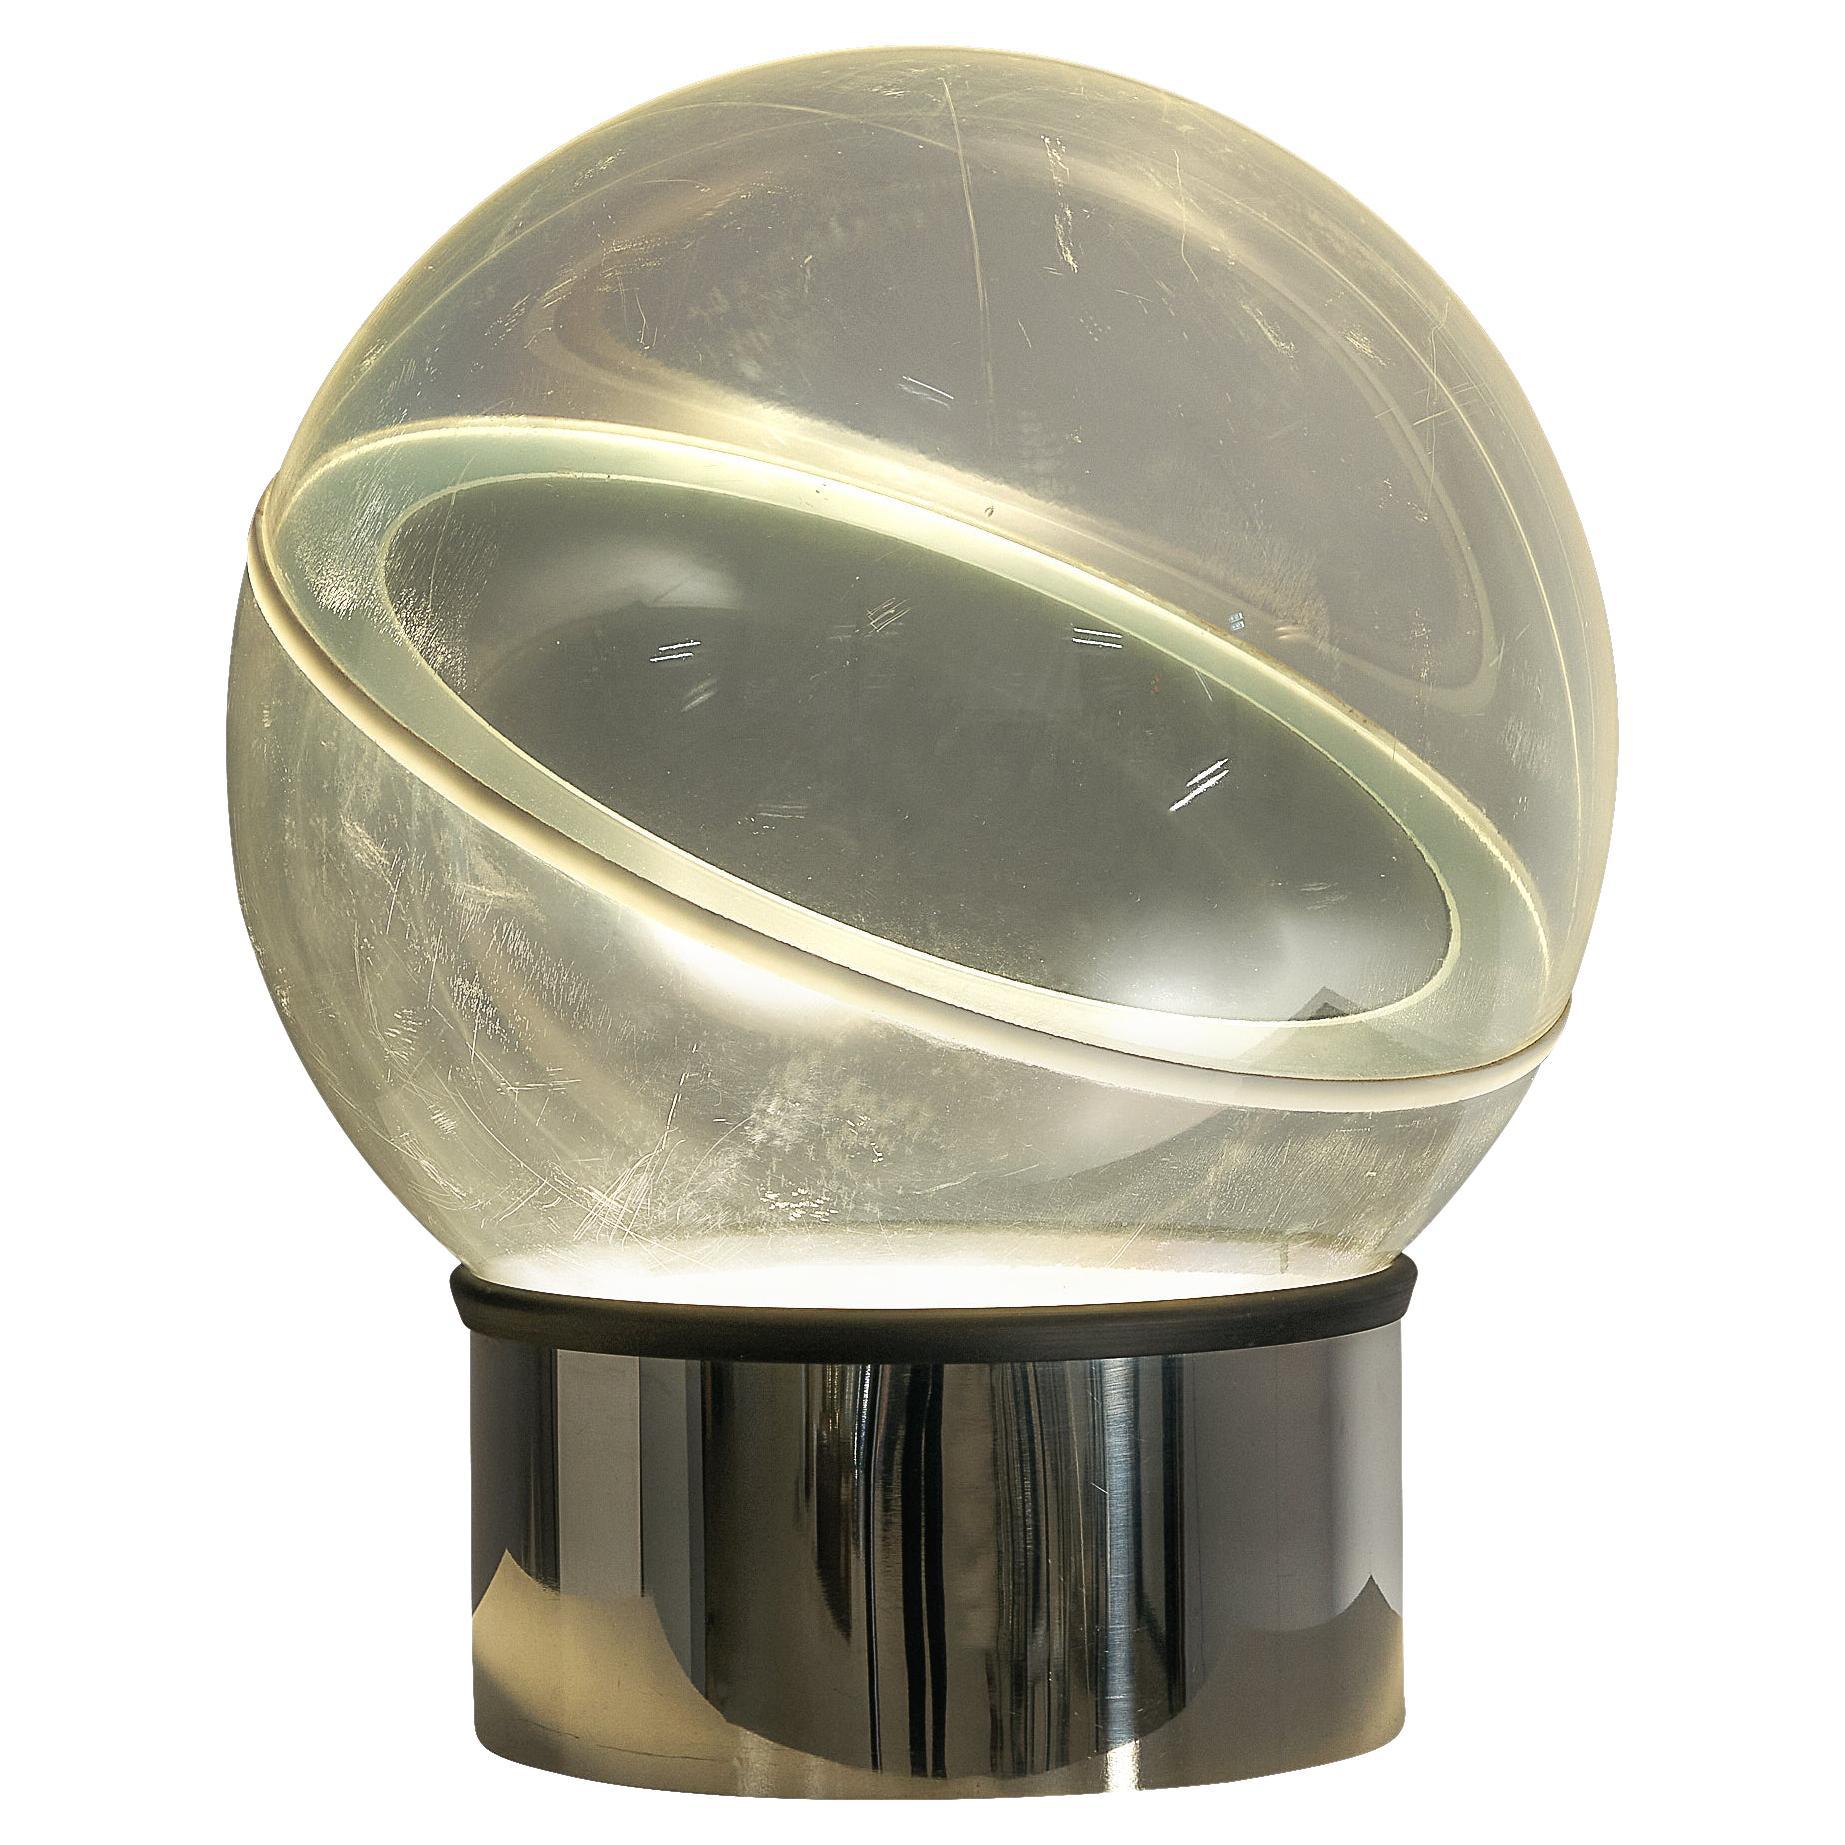 Filippo Panseca für Kartell, Tischlampe Modell '4044' aus Chrom und Neon